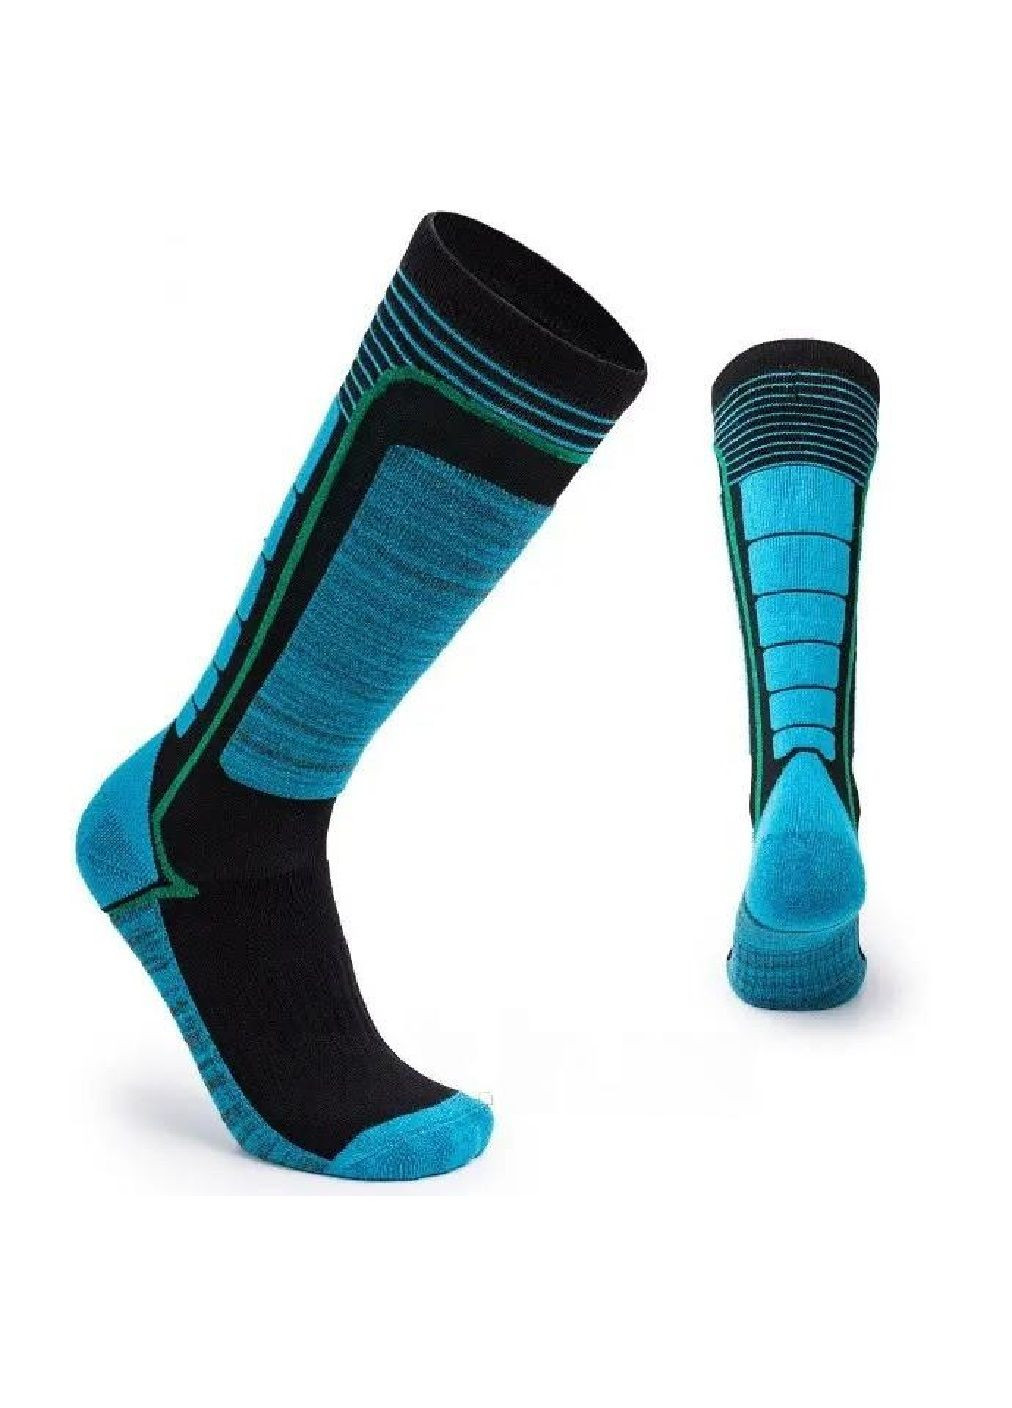 Термоноски носки гетры спортивные влагопоглощающие для взрослых унисекс размер L 39-42 (477025-Prob) Синие Unbranded (293483210)